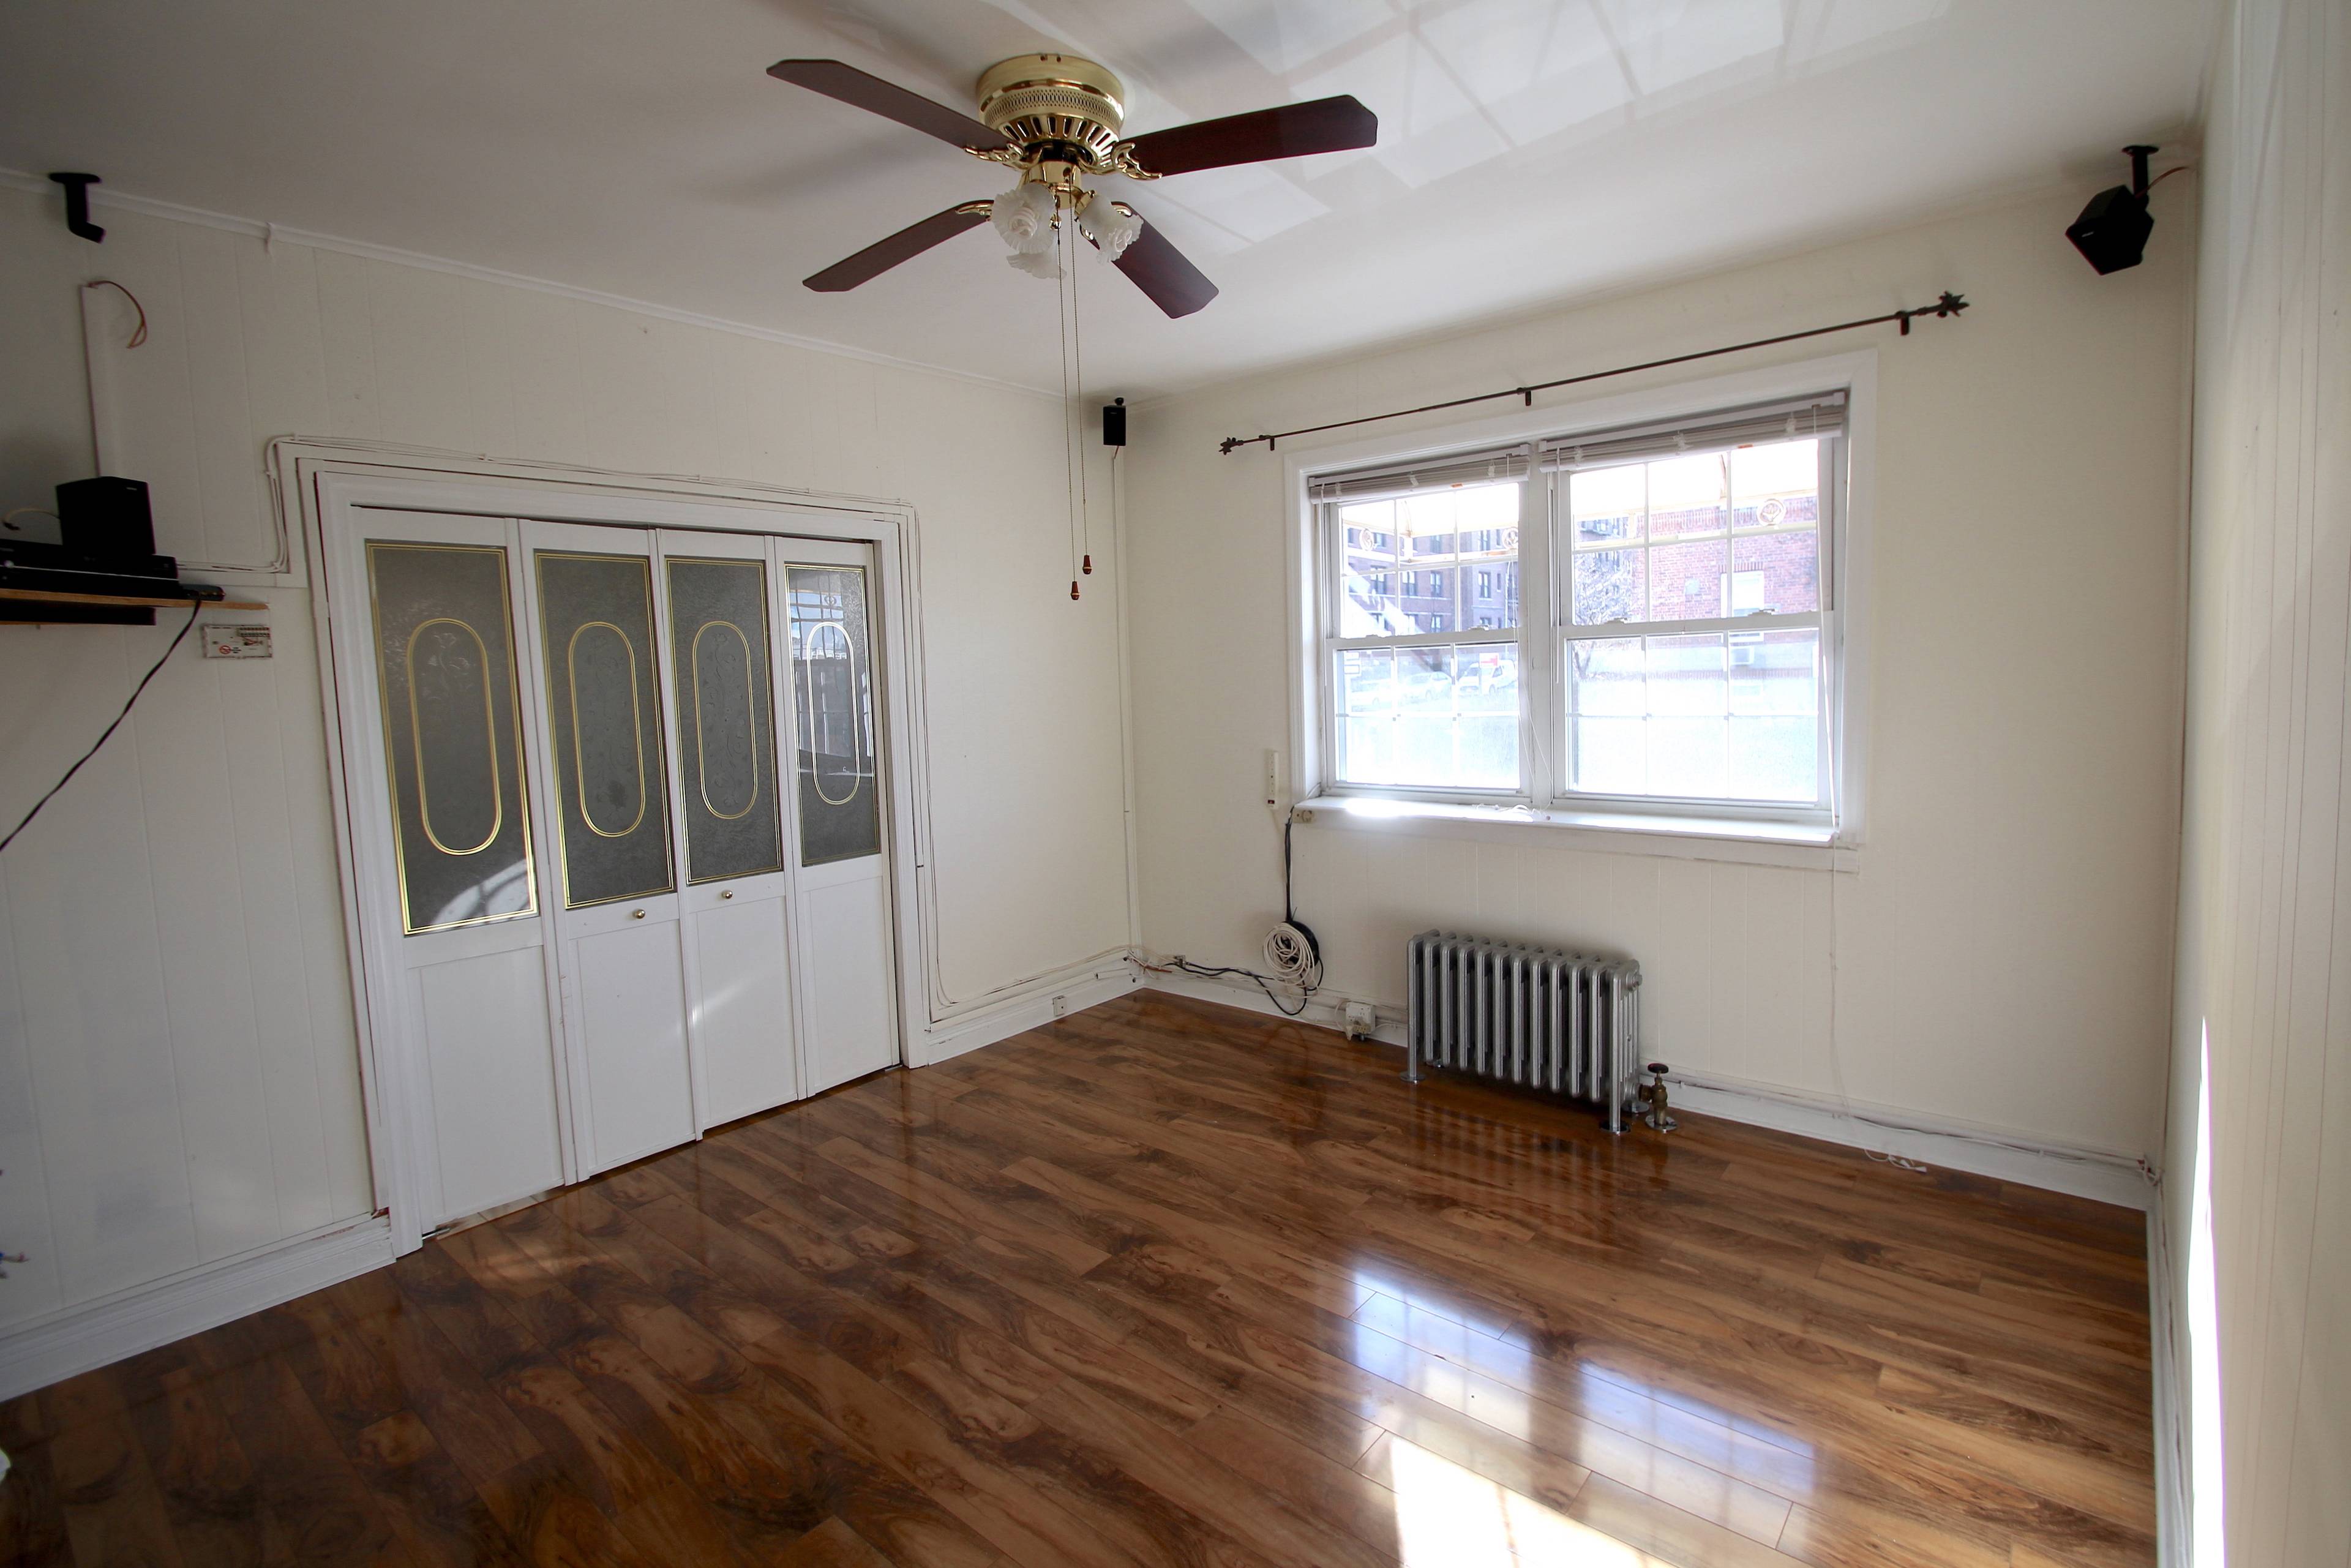 Sunnyside, Queens: Full Floor 3 Bedroom for Rent - 1 Block to 7 Train